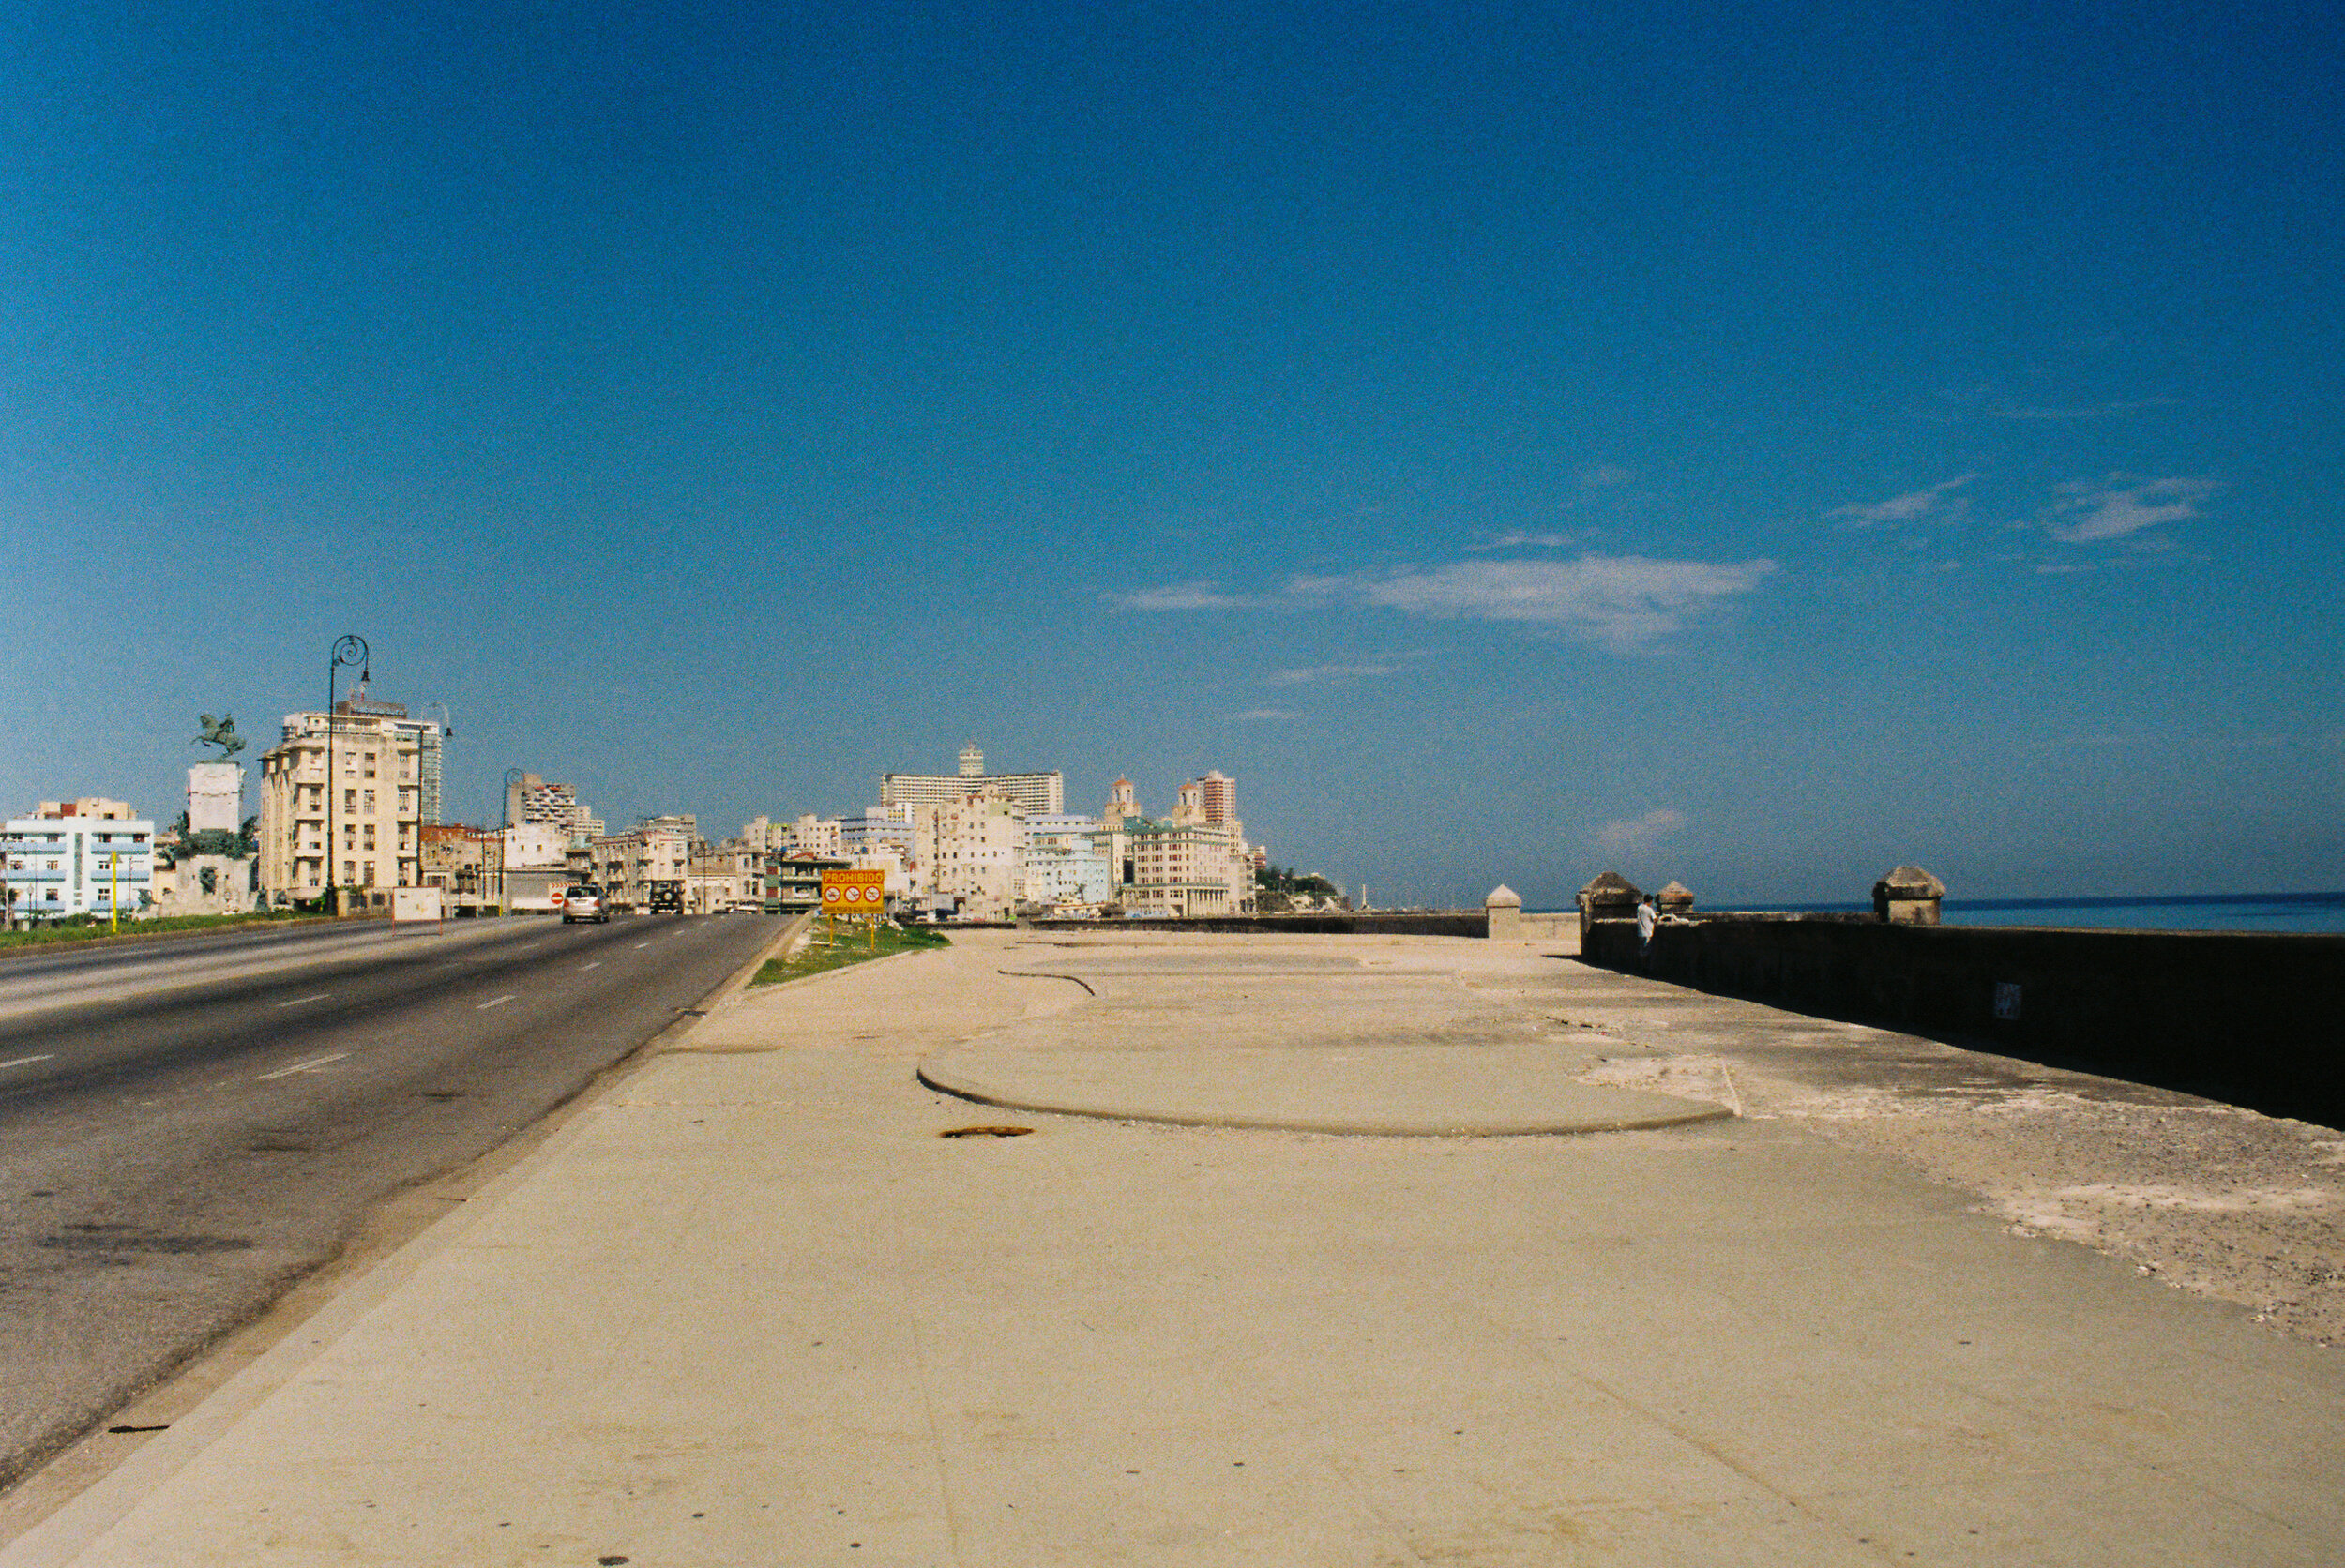 Cuba_35mm-7.jpg